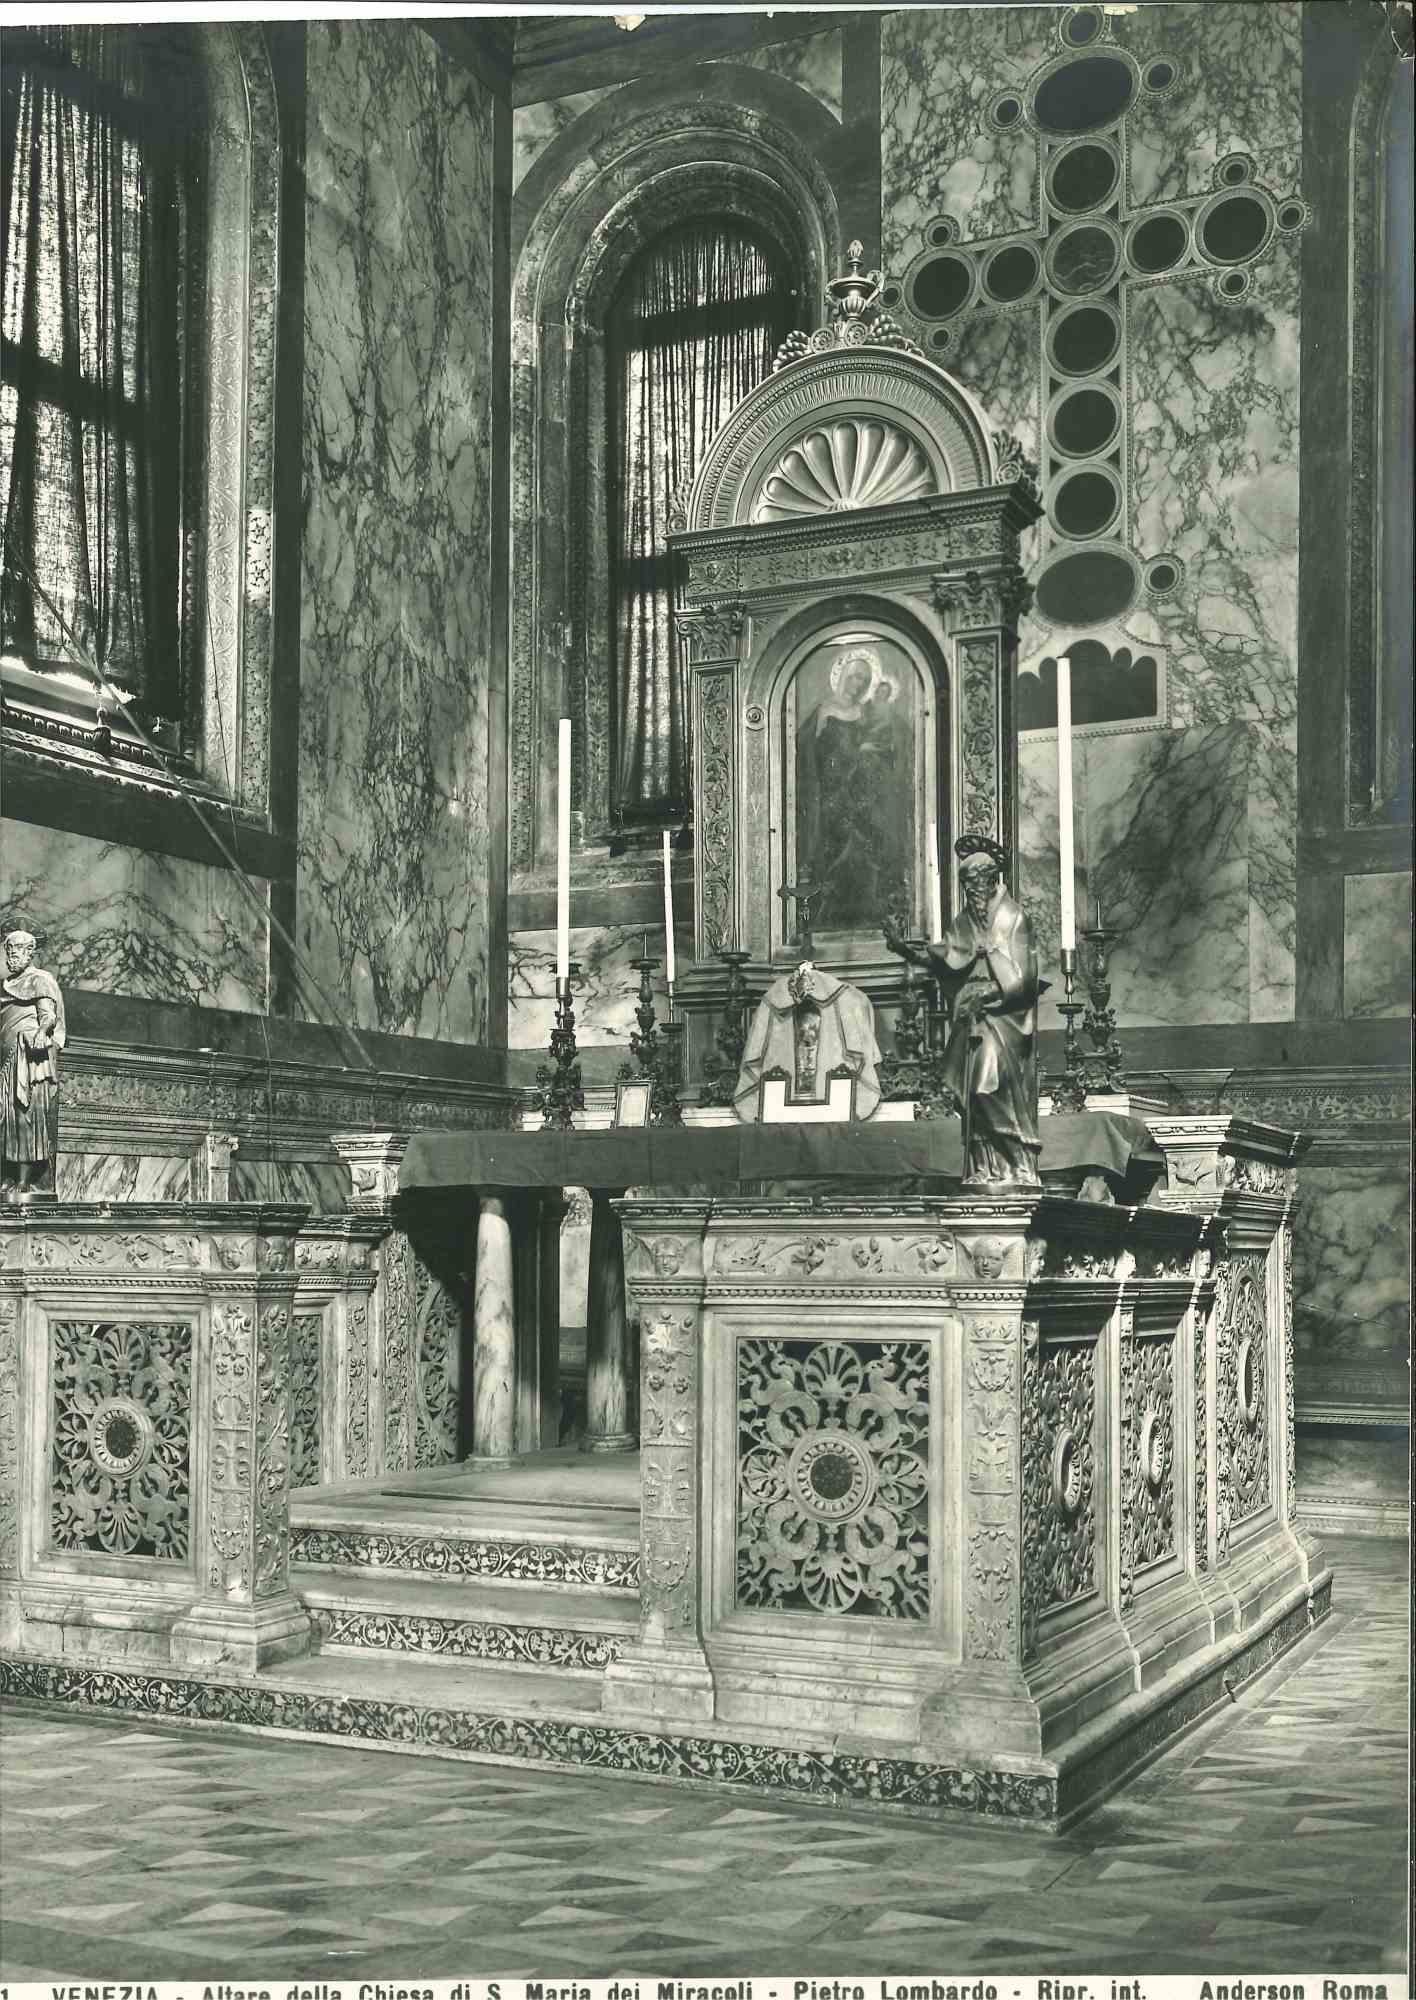 Unknown Figurative Photograph - Architecture and Art Photo - S. Maria dei Miracoli Church - Venice - 1920s